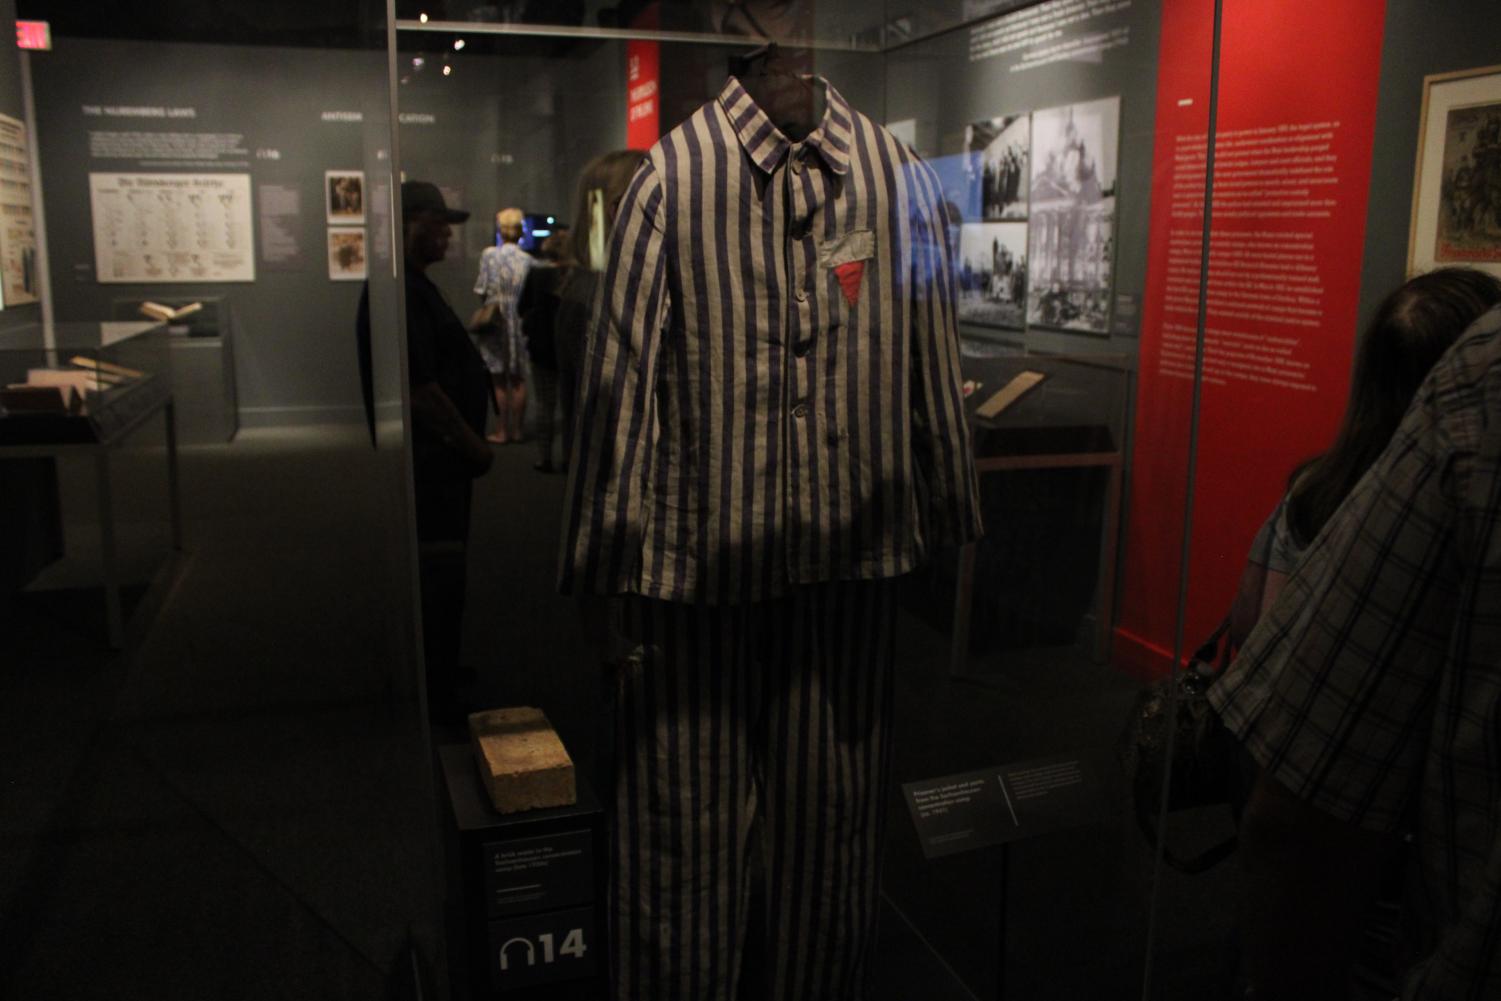 A uniform worn by Auschwitz prisoners in the Holocaust on display at Auschwitz exhibit